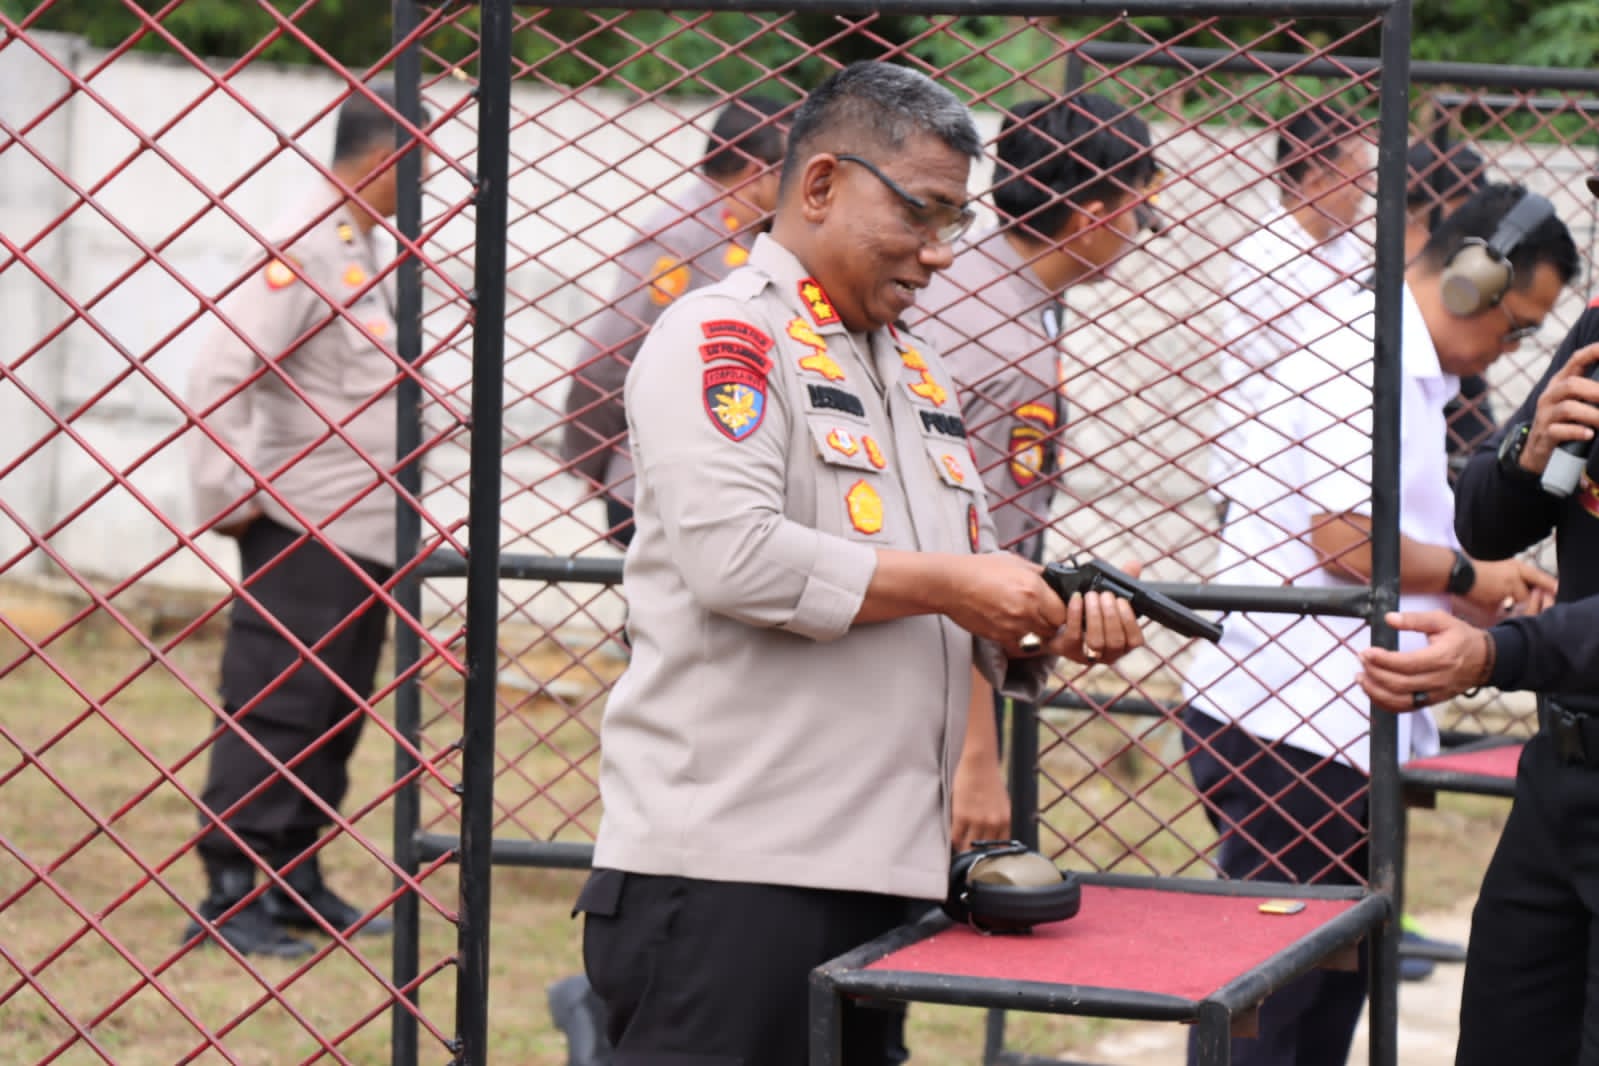 Secara Lansung Pimpin Latihan Tembak Yang Dilaksanakan Personil di Lapangan Outdor Yuniar Ari Darmawan